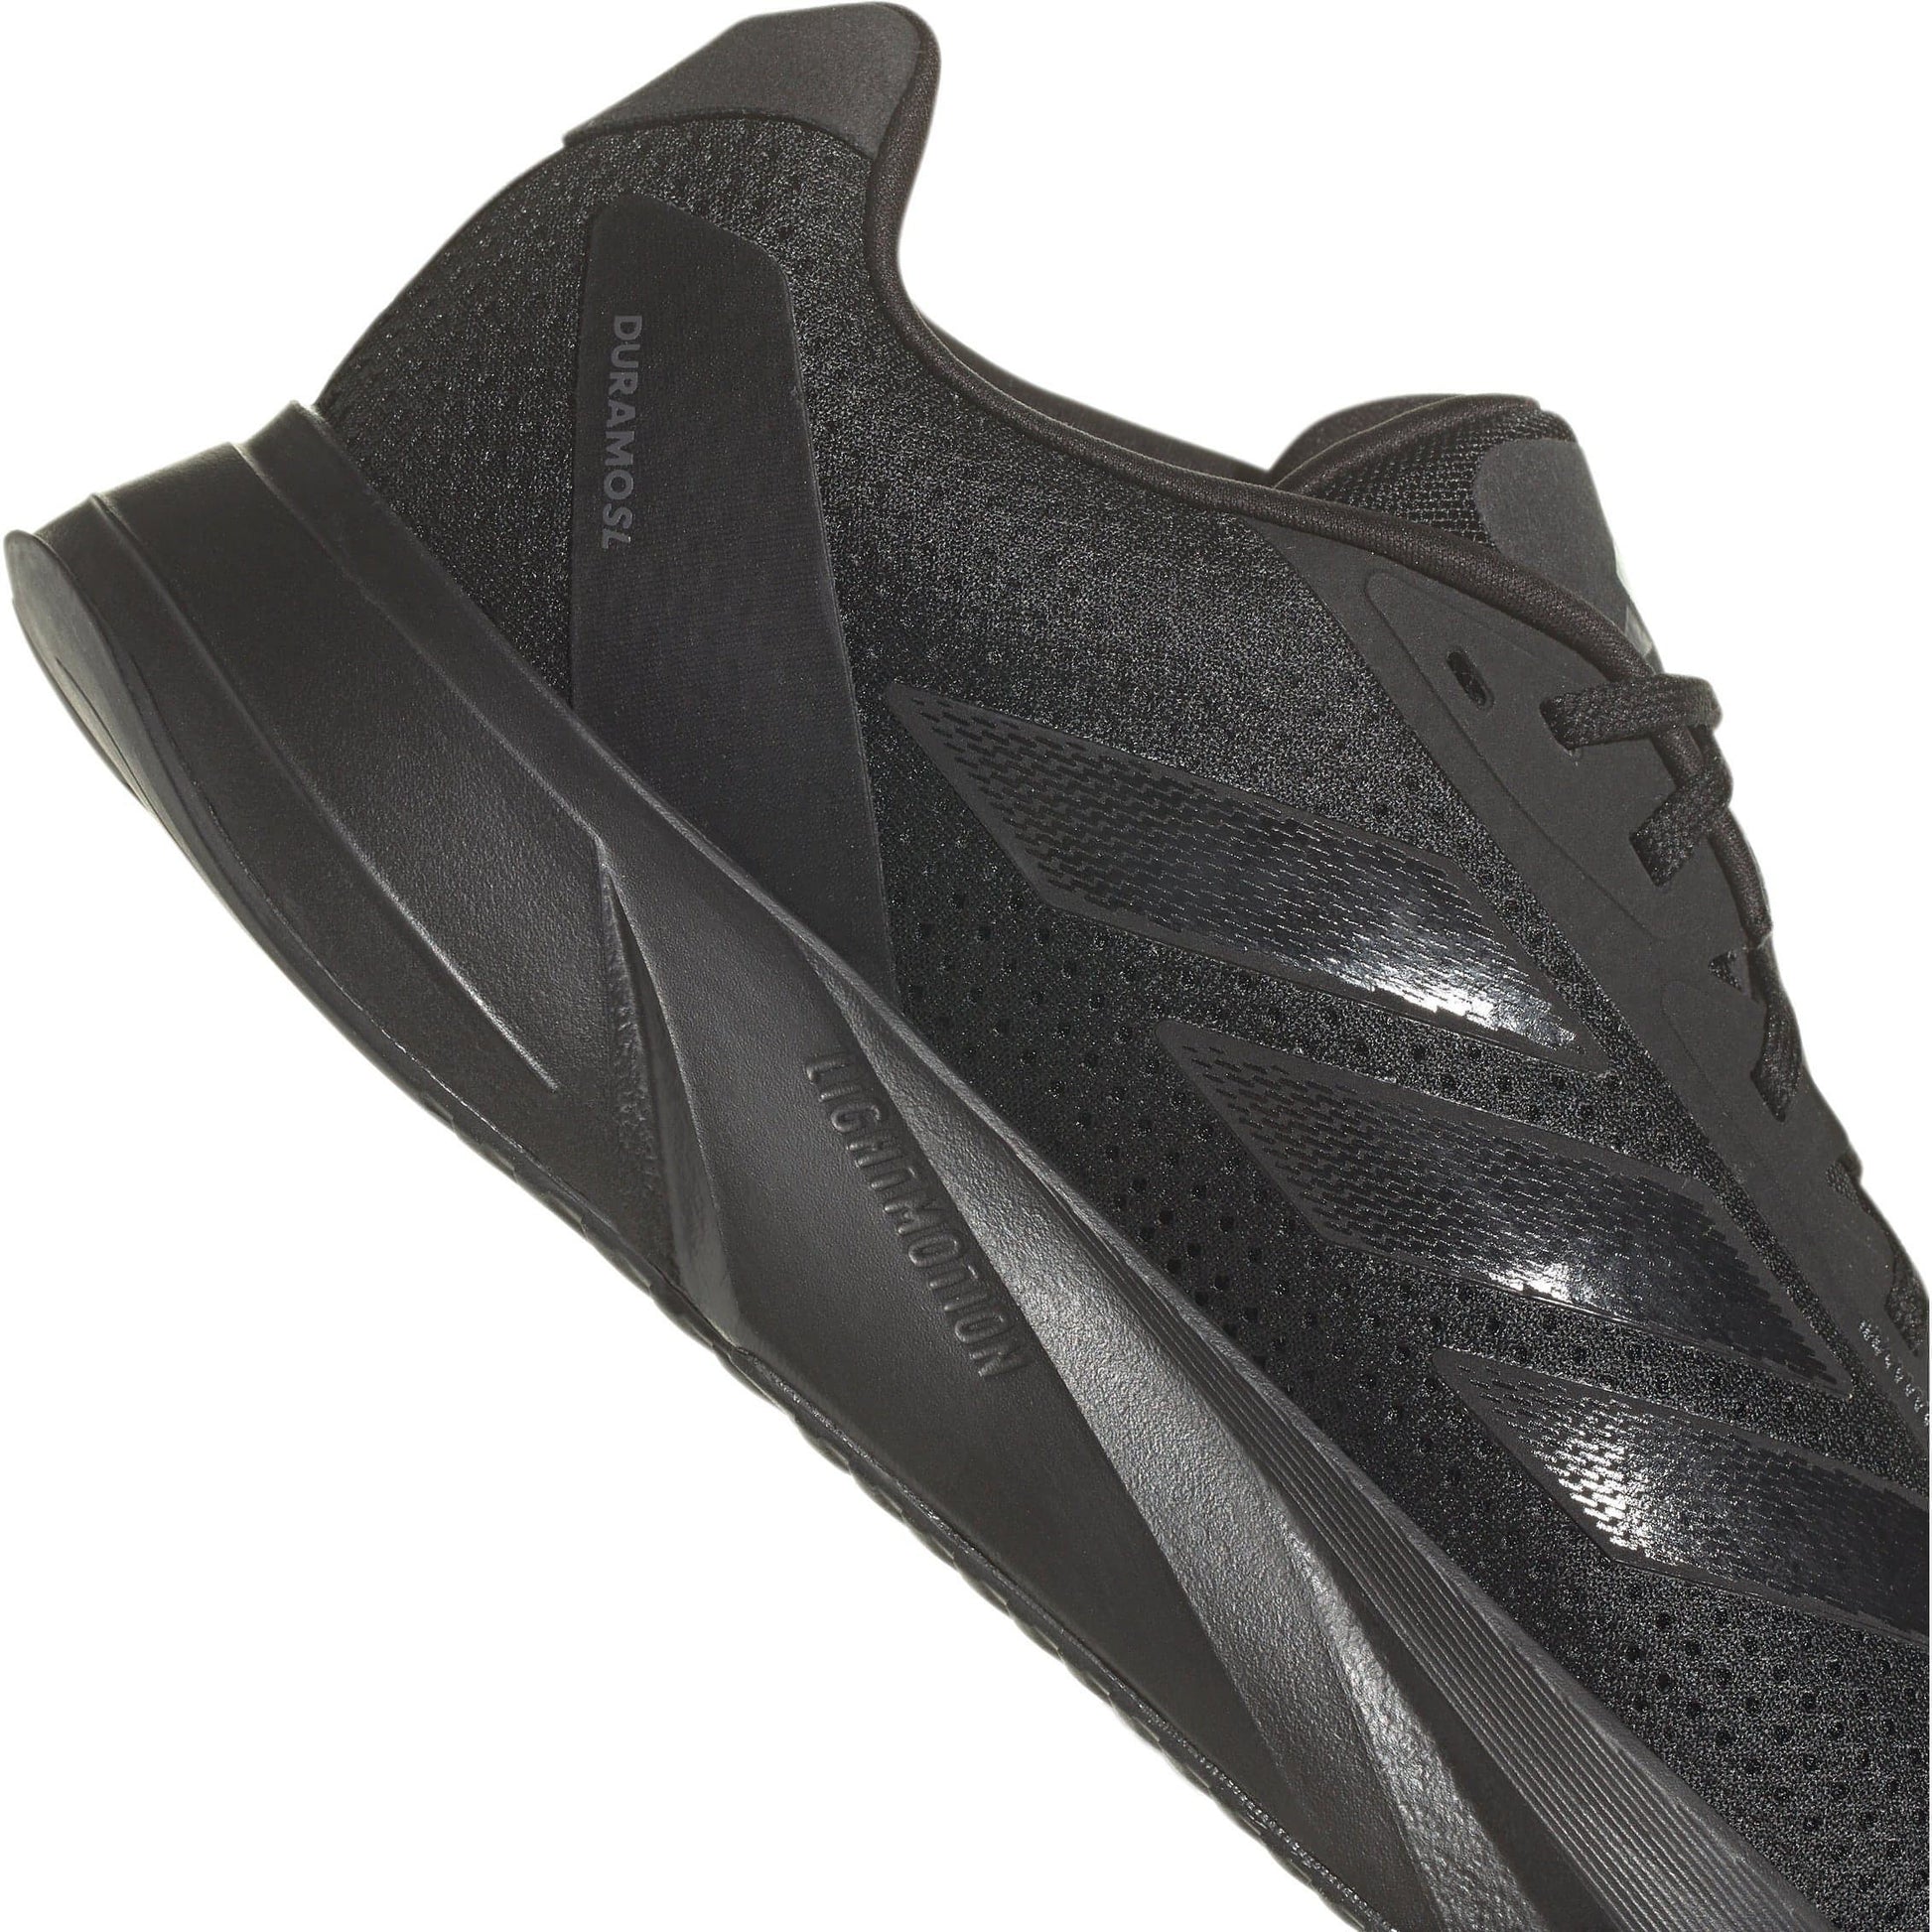 Adidas Duramo Sl Shoes Ie7261 Details